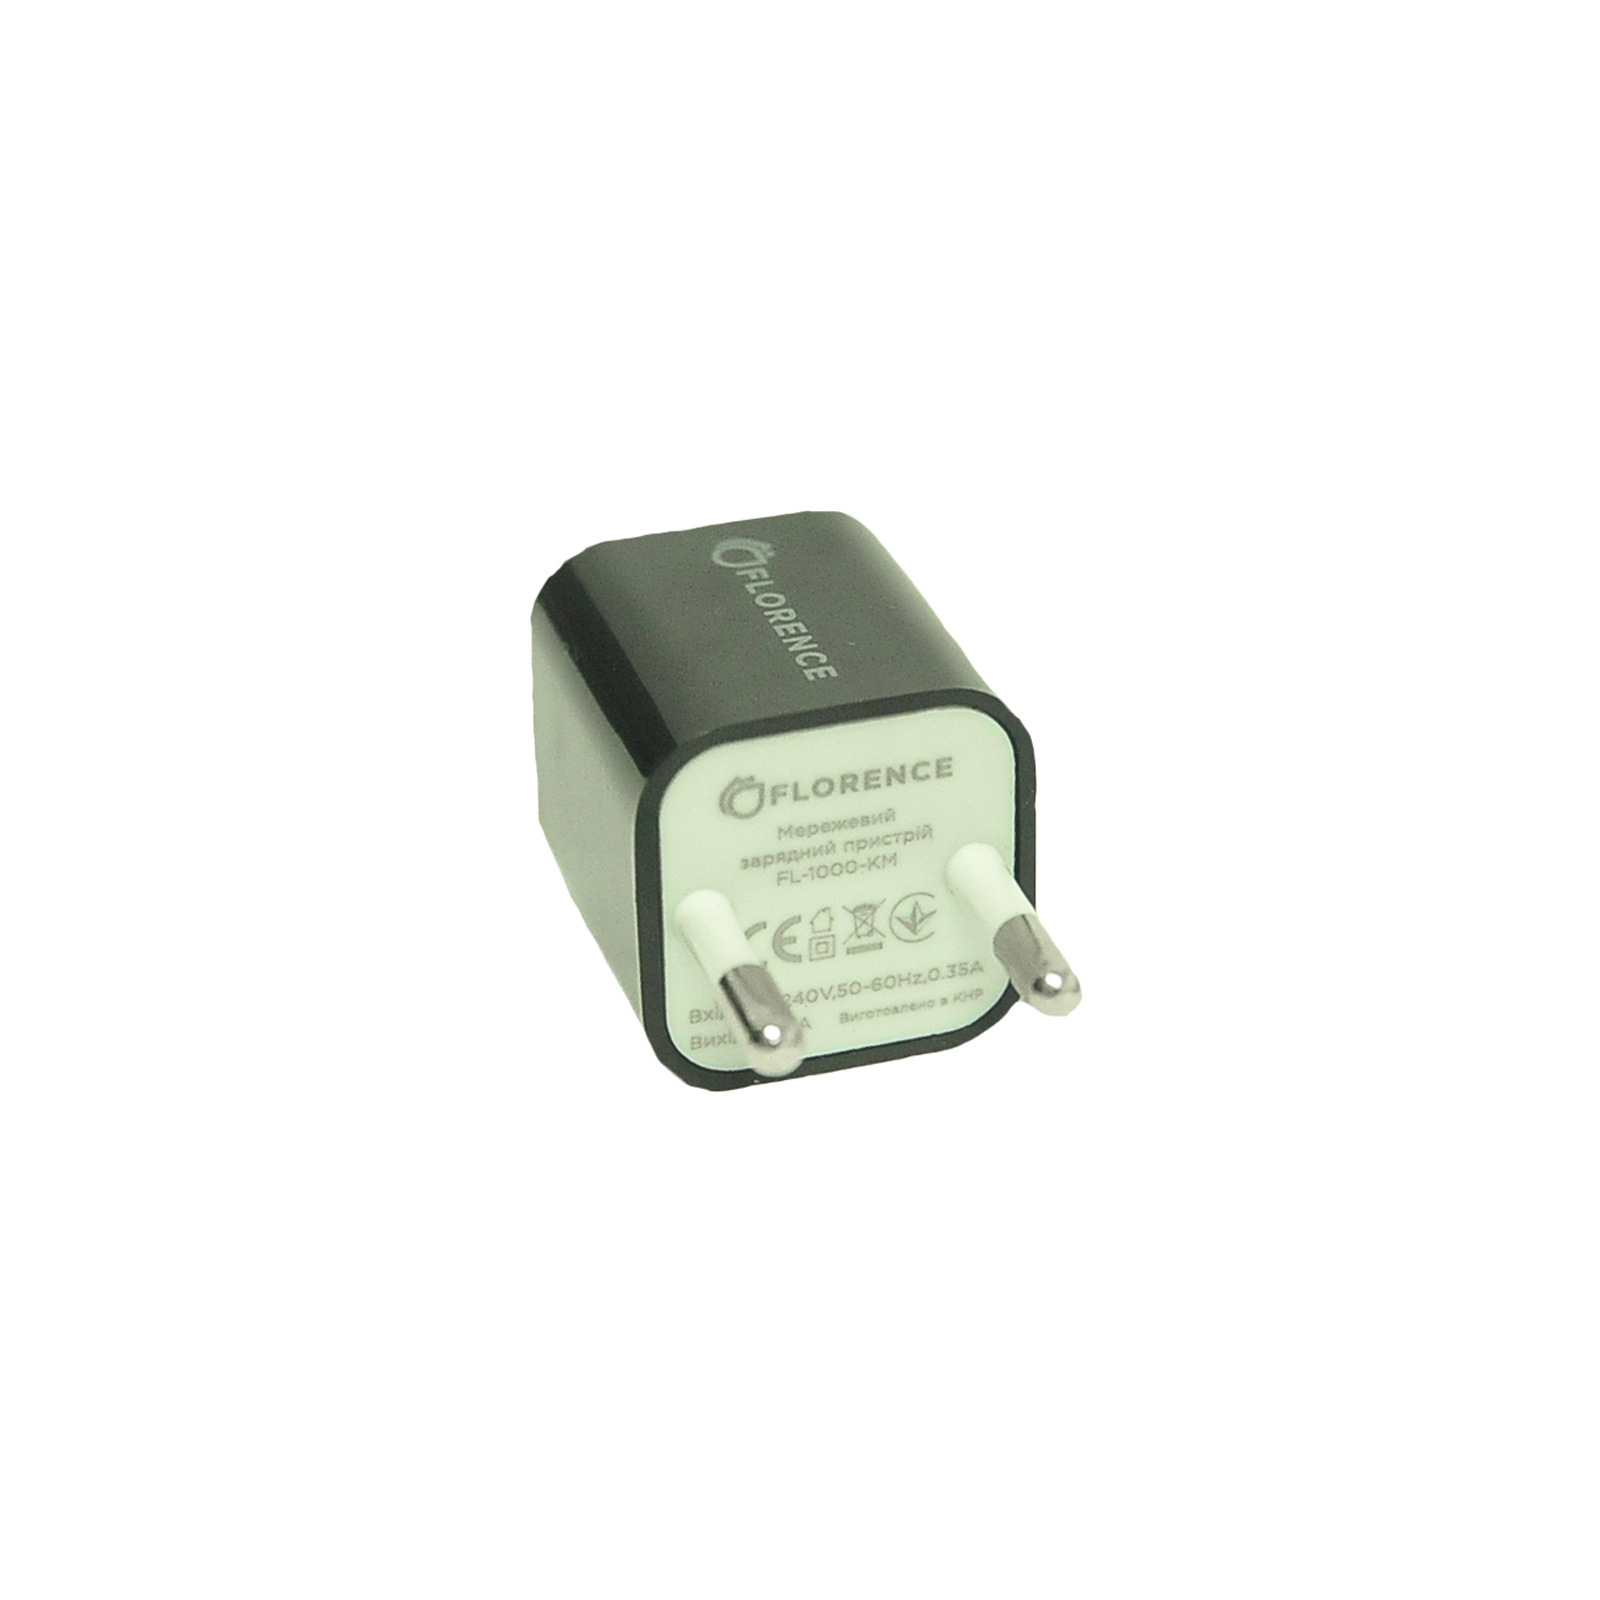 Зарядное устройство Florence 1USB 1A + microUSB cable black (FL-1000-KM) (FL-1000-KM)